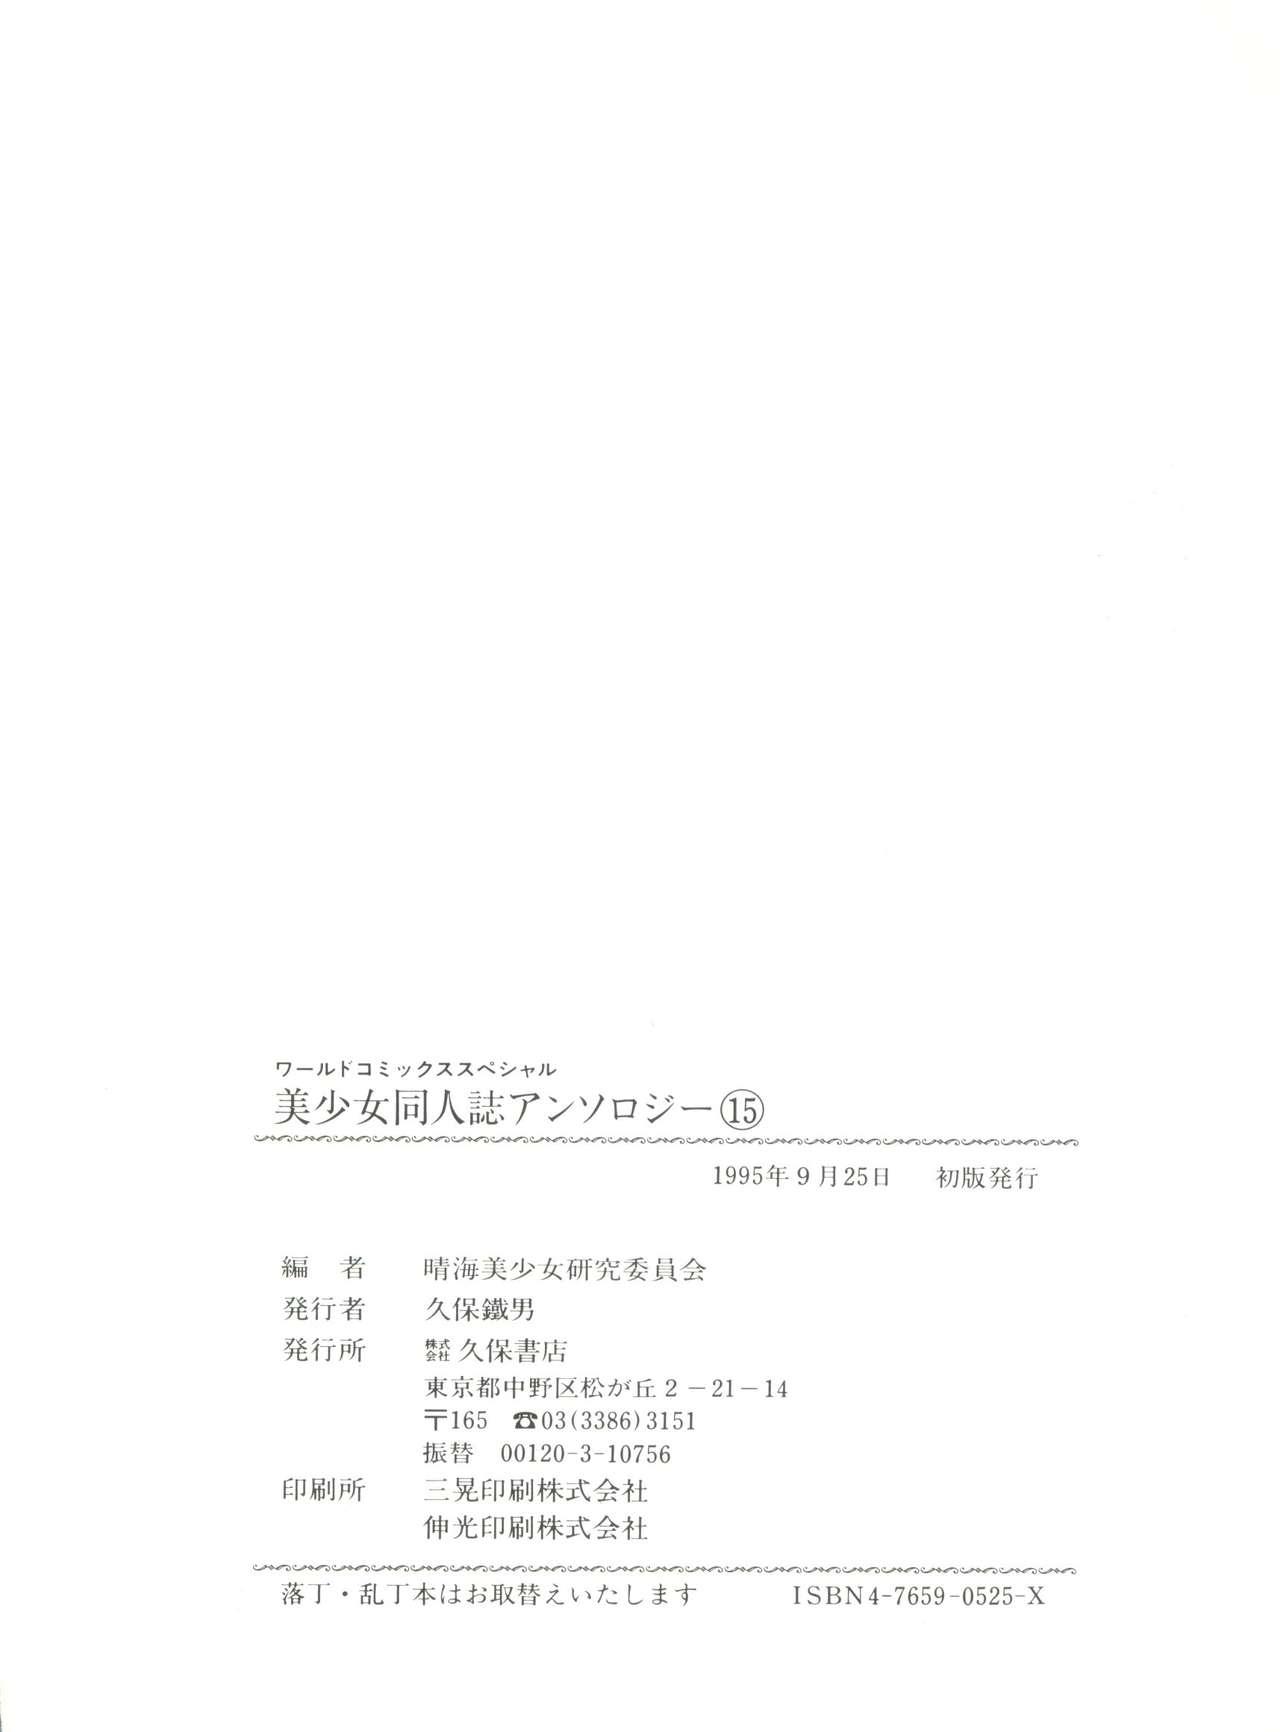 Bishoujo Doujinshi Anthology 15 - Moon Paradise 9 Tsuki no Rakuen 143